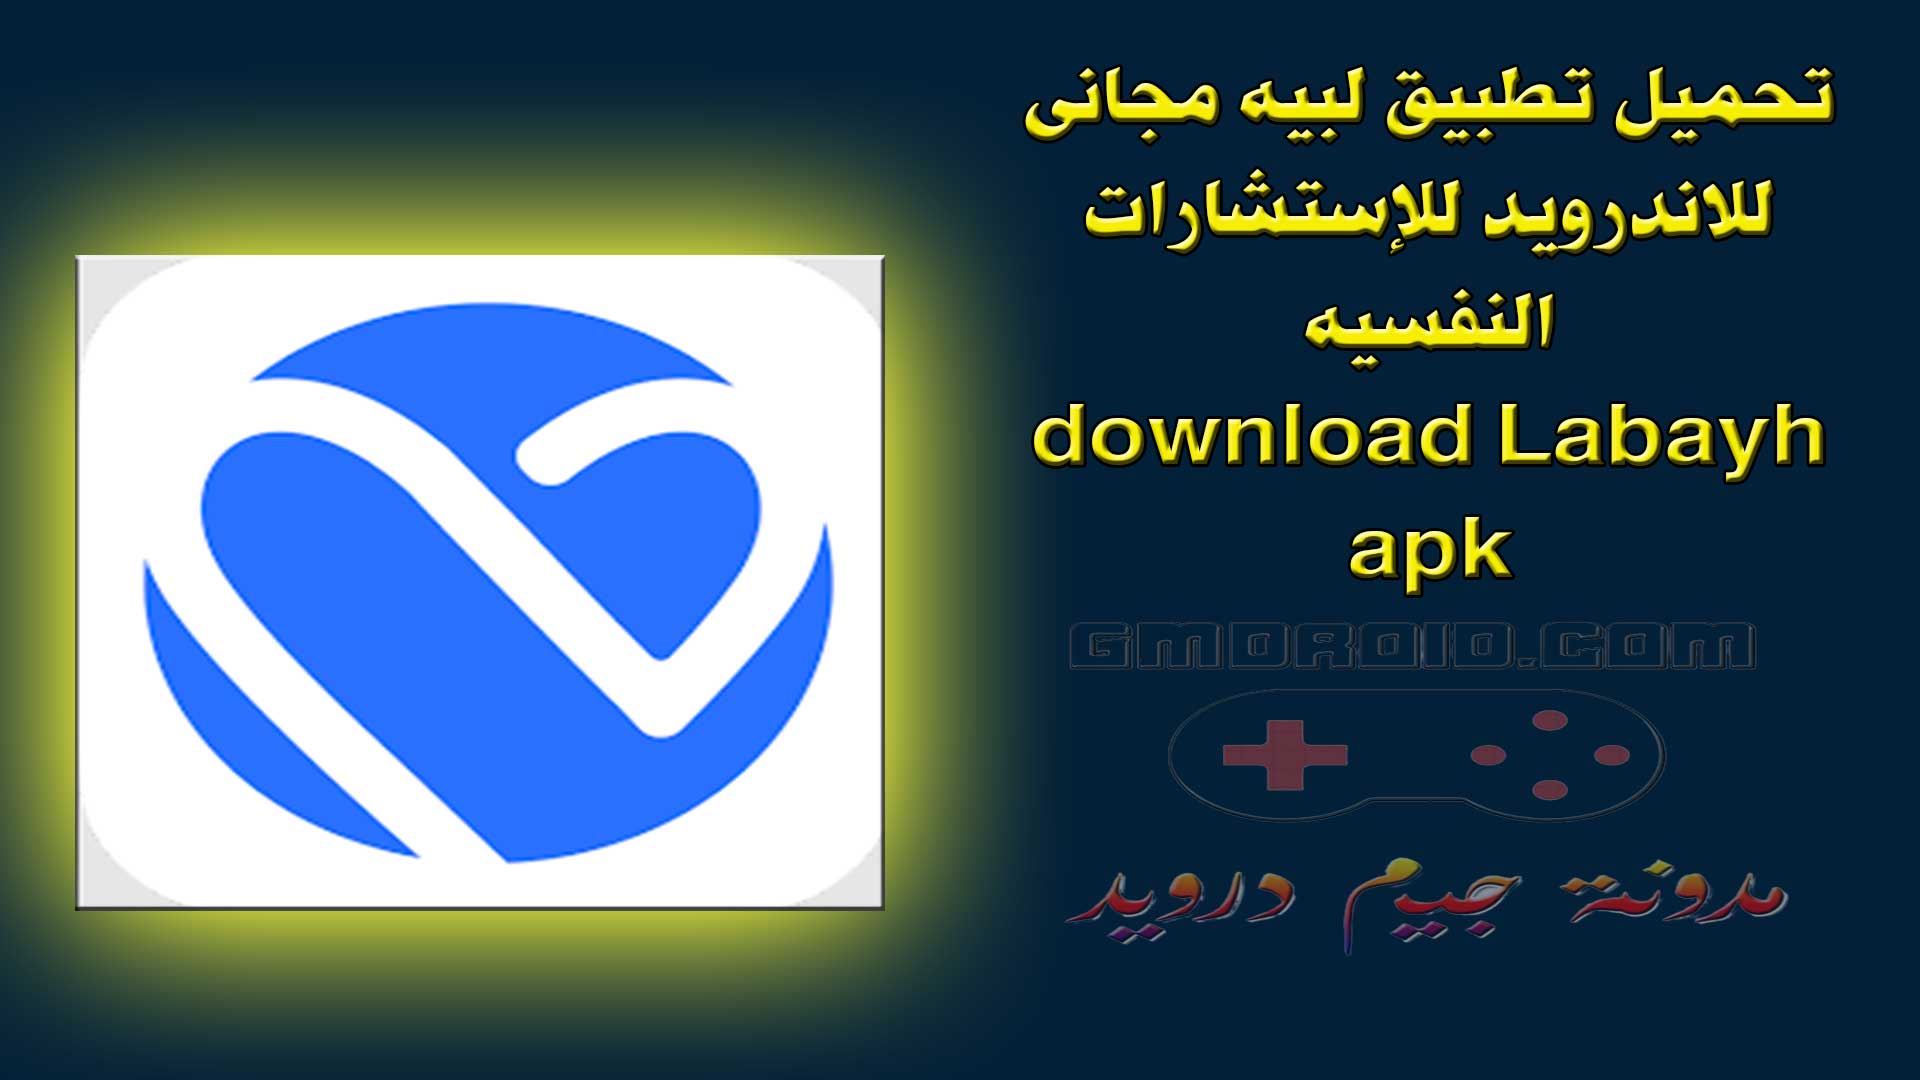 تحميل تطبيق لبيه مجانى للاندرويد للإستشارات النفسيه - download Labayh apk